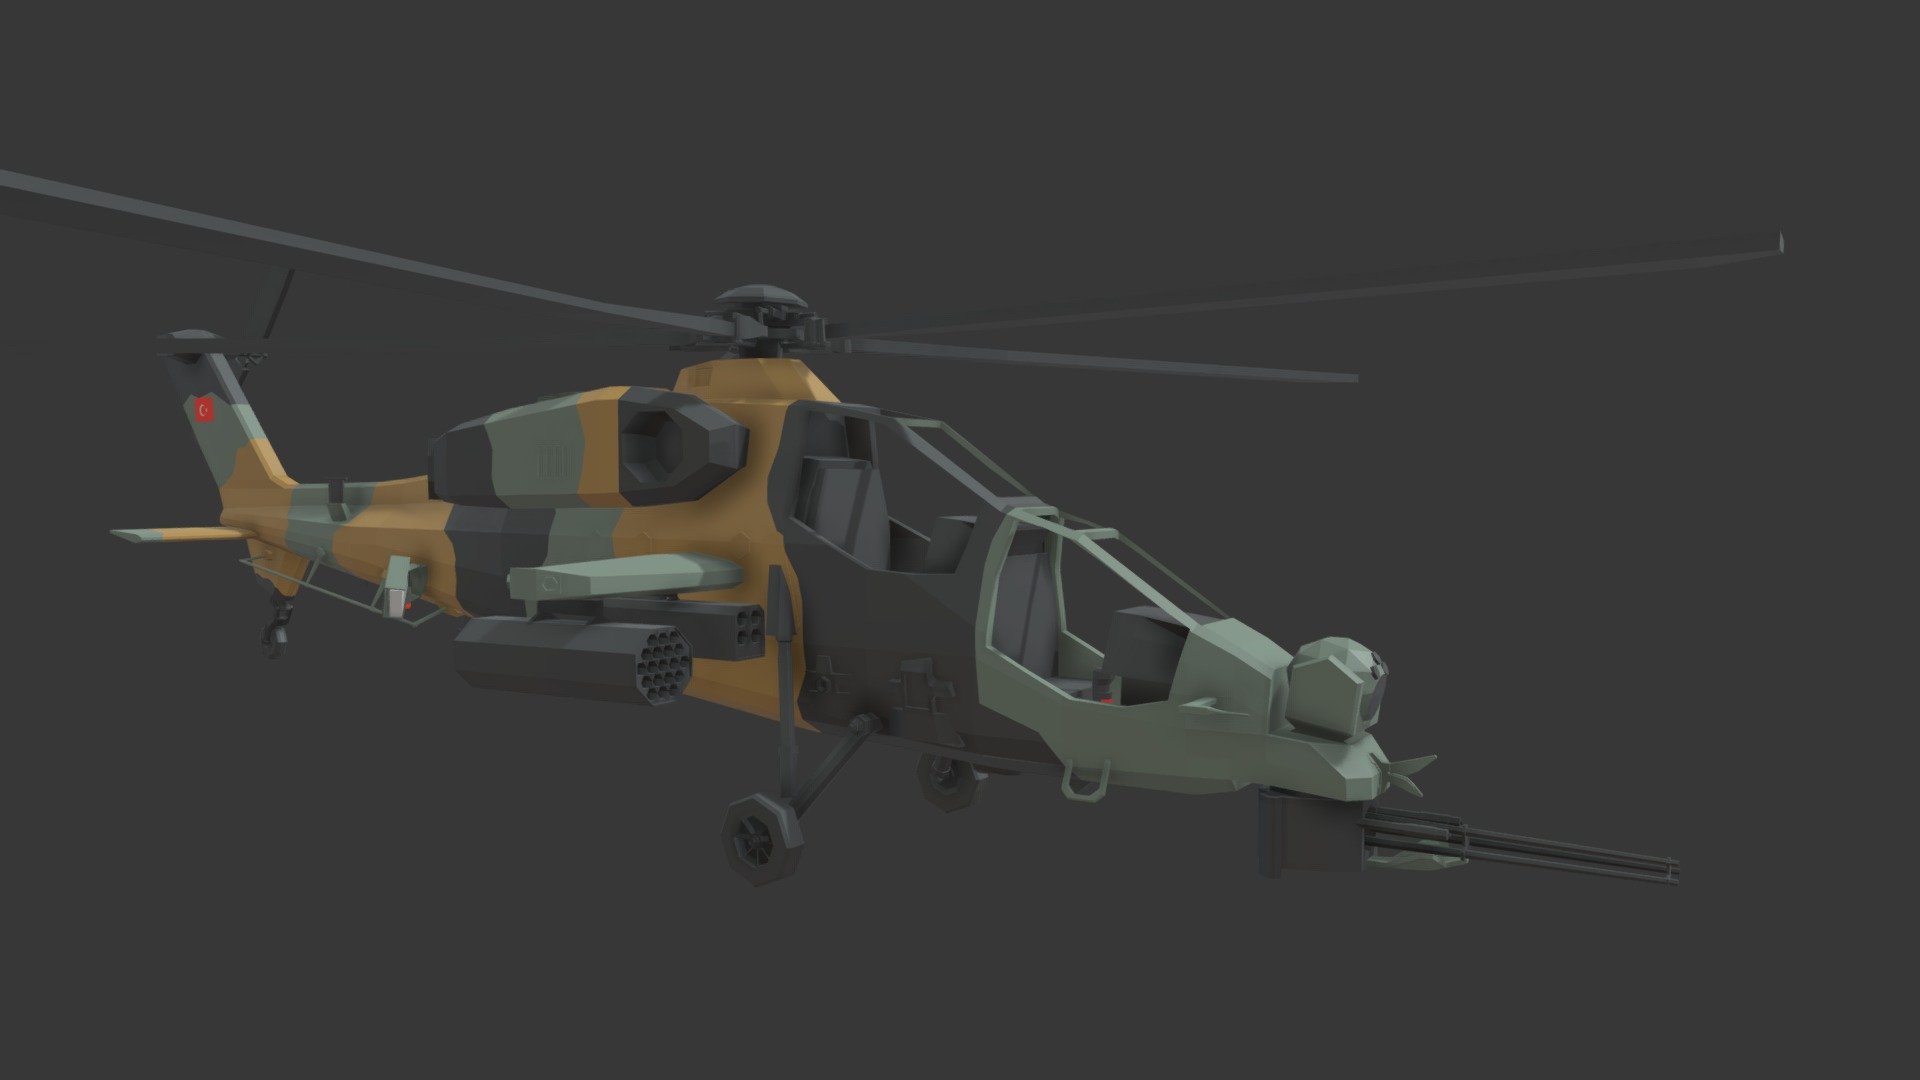 hehe helicopter go brrrt - T-129 ATAK - 3D model by T-929 (@FriendlyHoovy69) 3d model